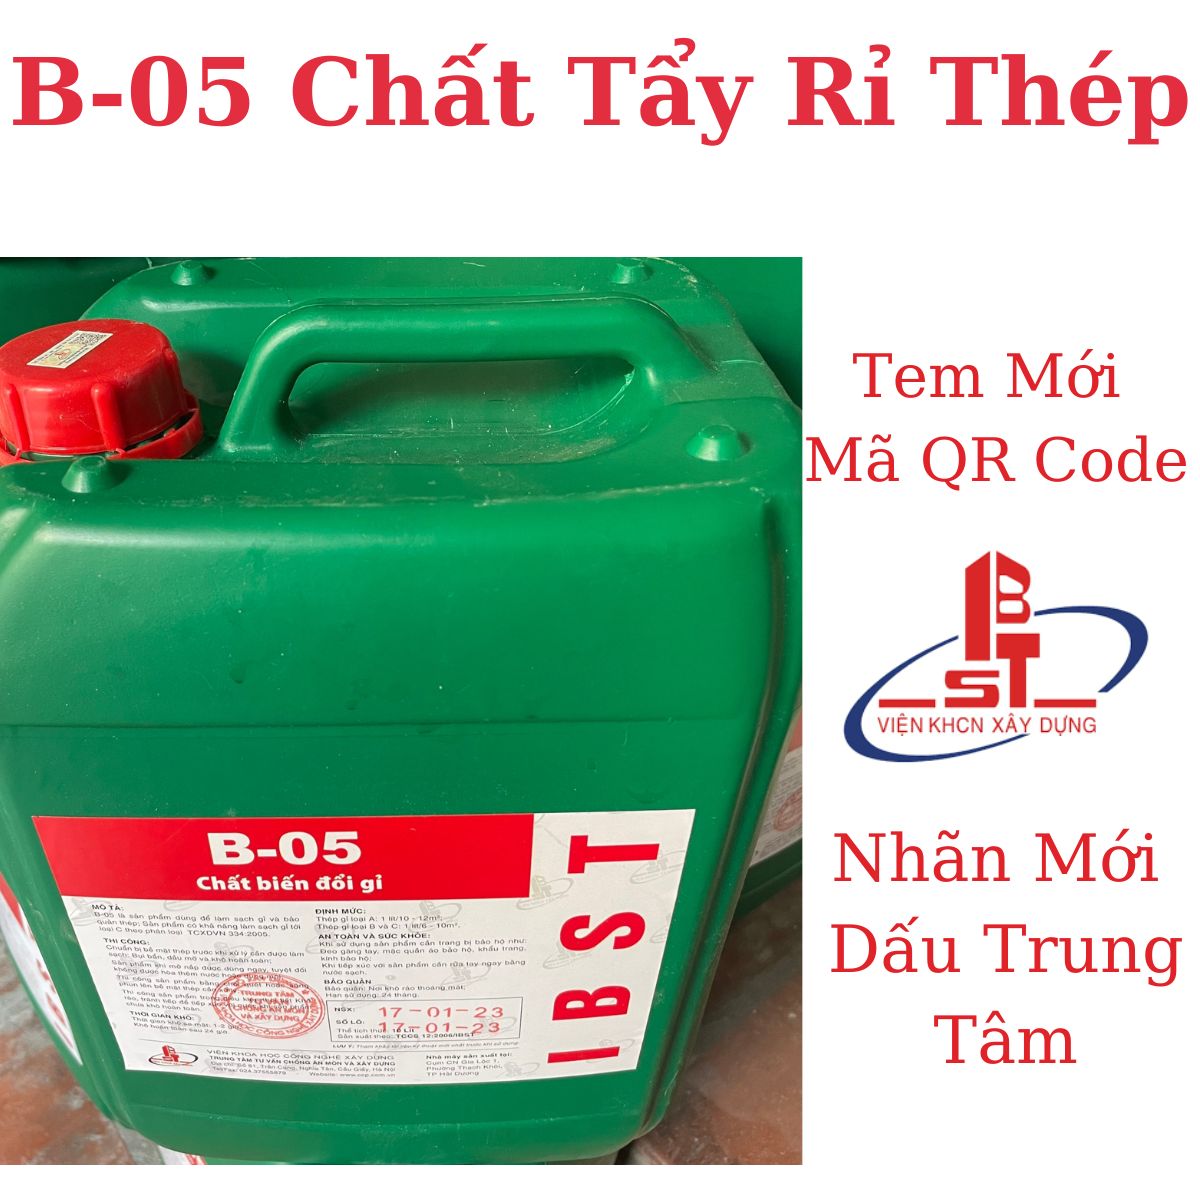 B-05-chat-tay-ri